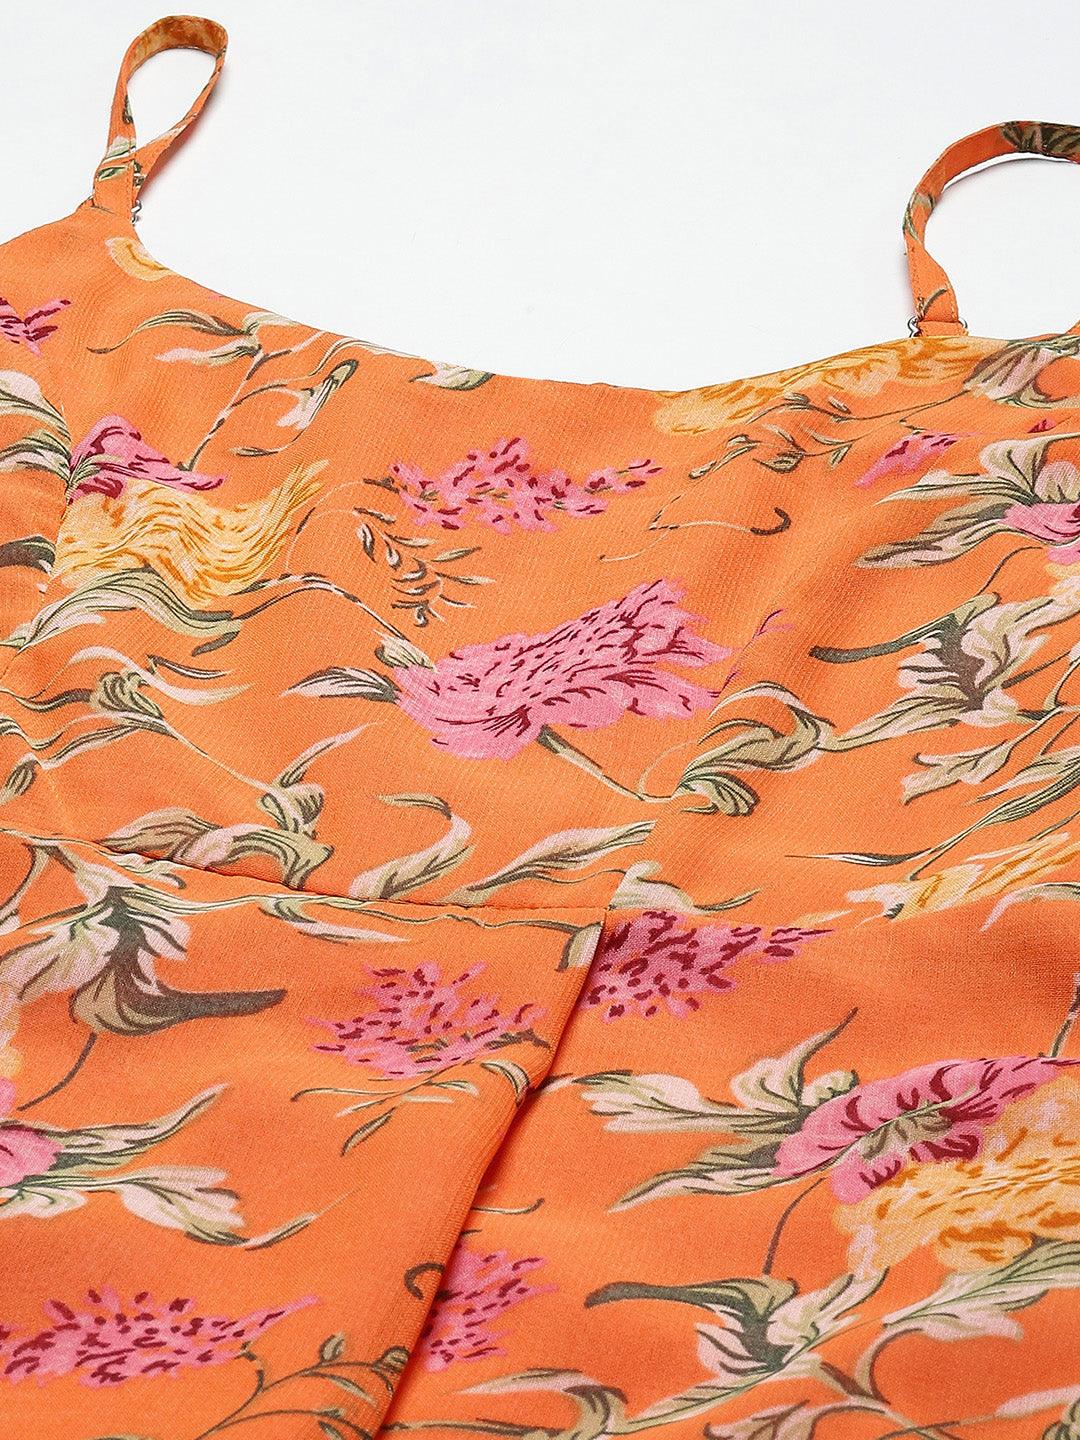 Qurvii Orange Floral Maxi Dress - Qurvii India